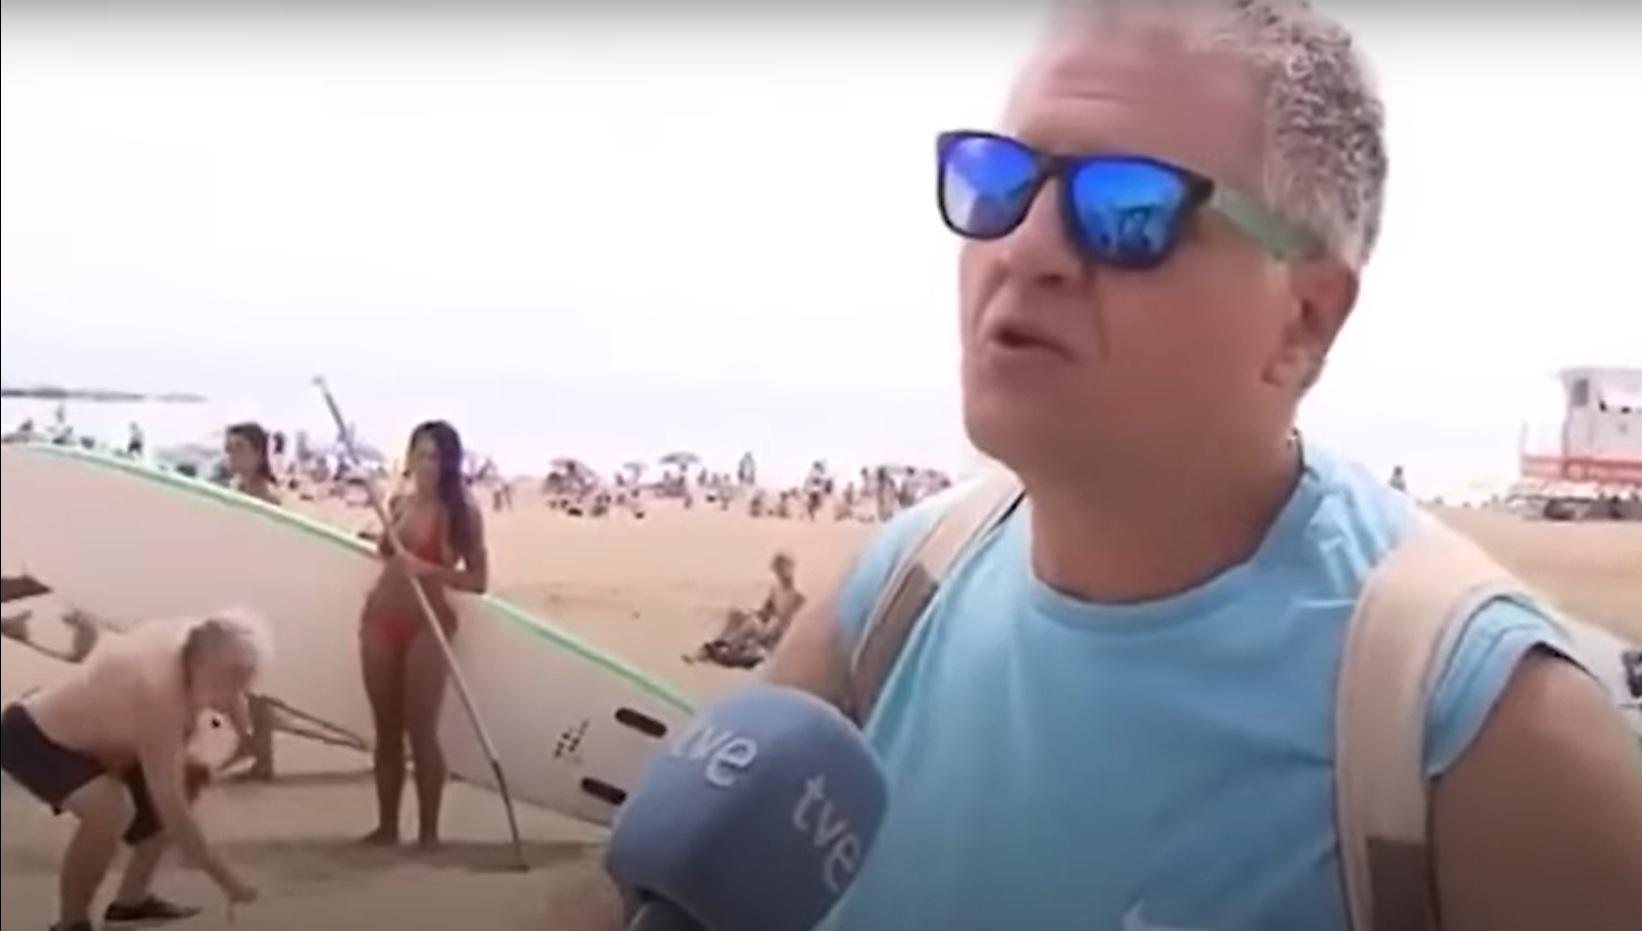 Un turist dădea un interviu atunci când camerele au surprins o scenă de necrezut pe fundal. S-a întâmplat pe o plajă din Barcelona